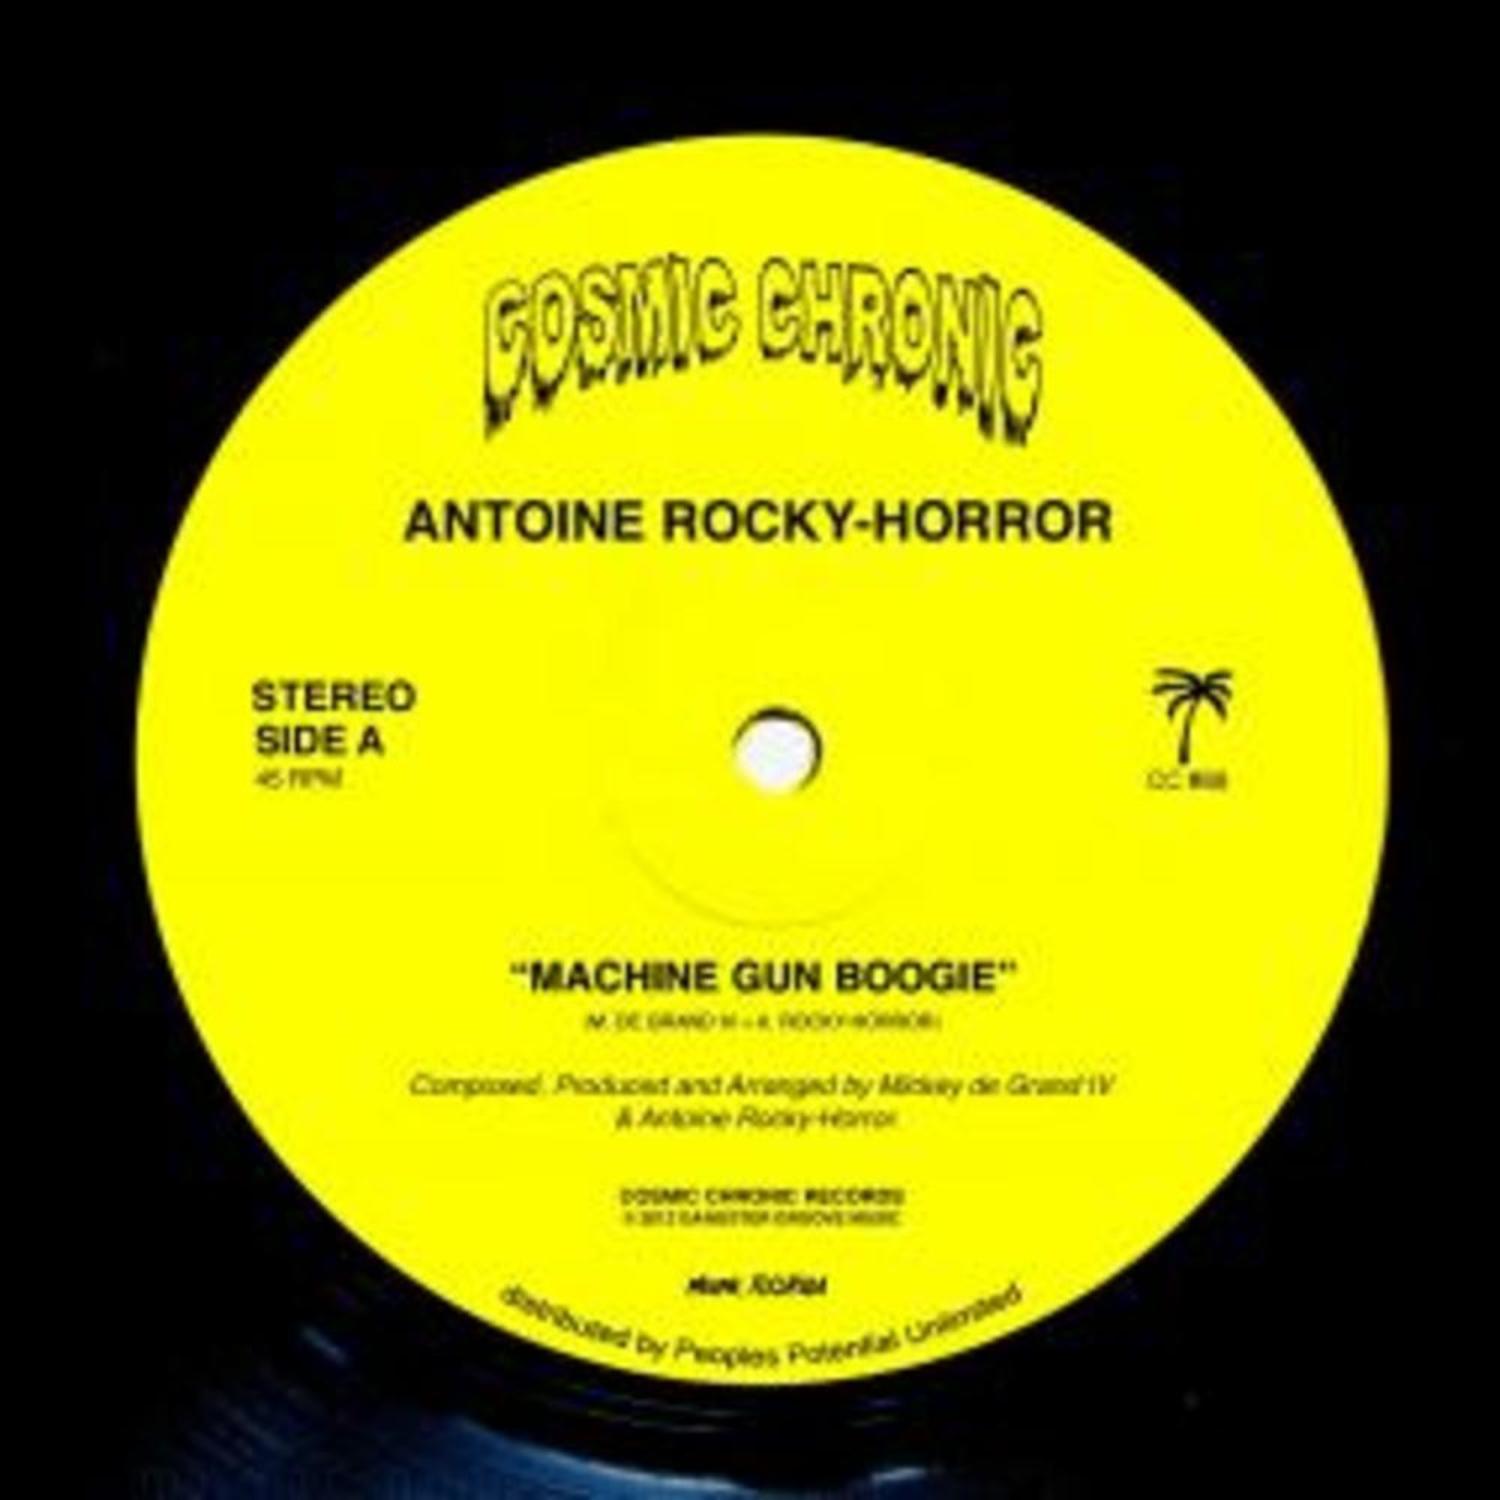 Antoine Rocky-Horror - MACHINE GUN BOOGIE